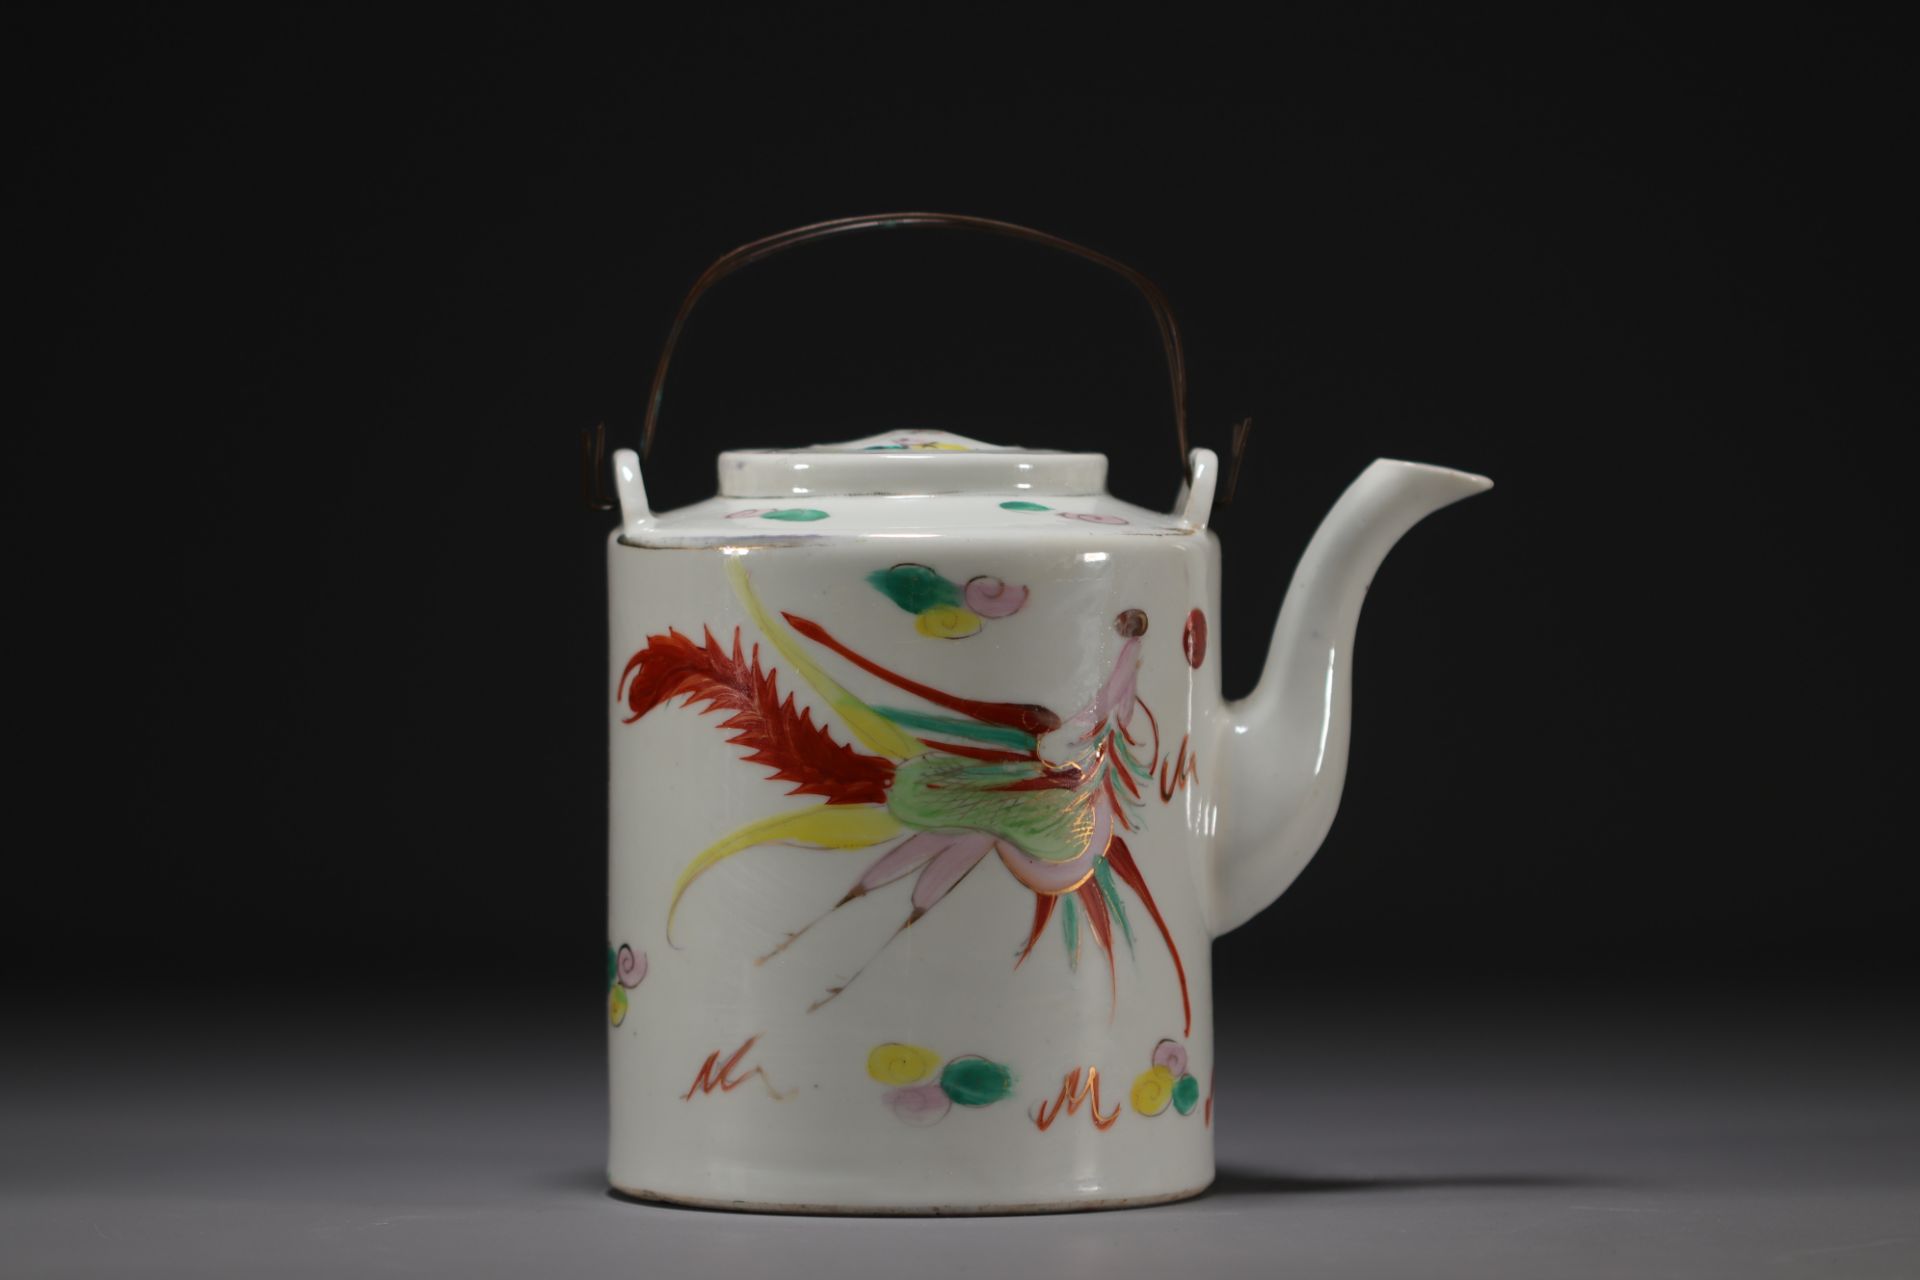 China - Porcelain teapot with dragon design, circa 1900. - Bild 2 aus 4